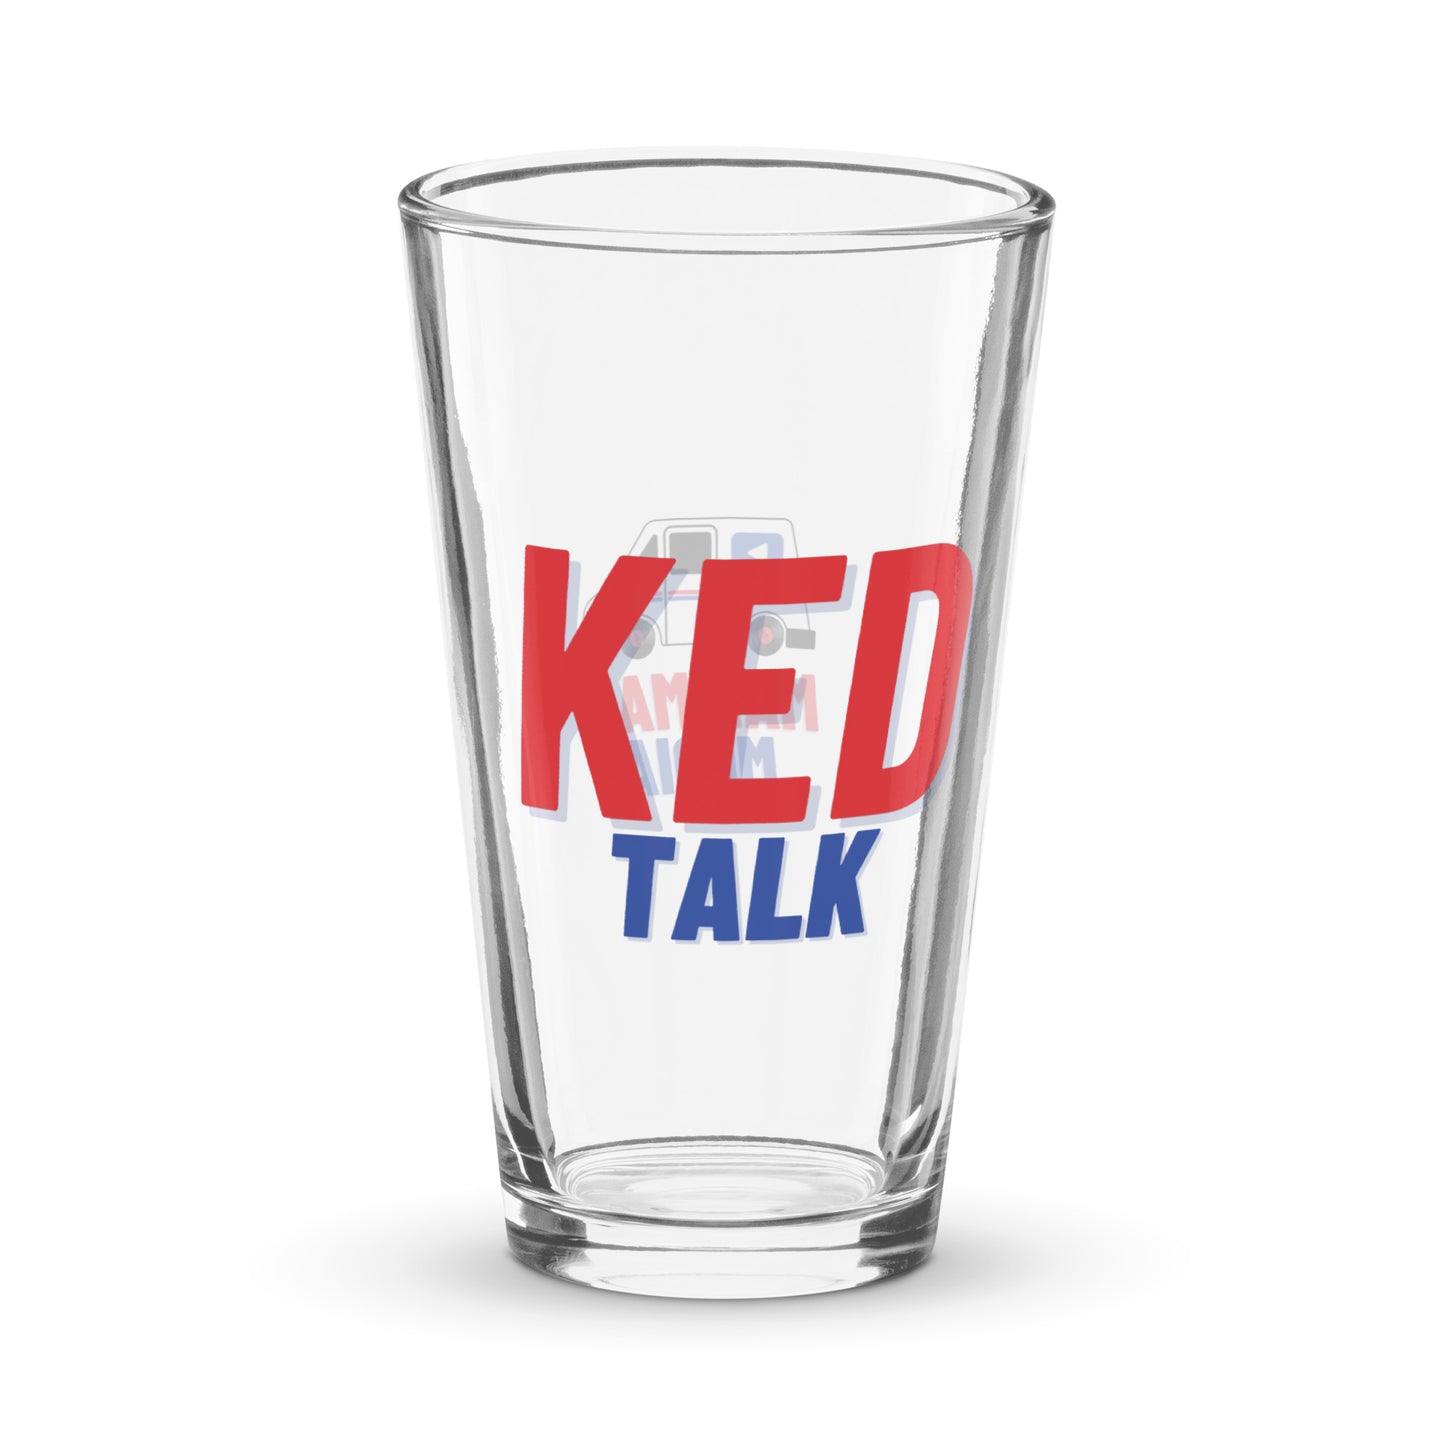 KED Talk pint glass